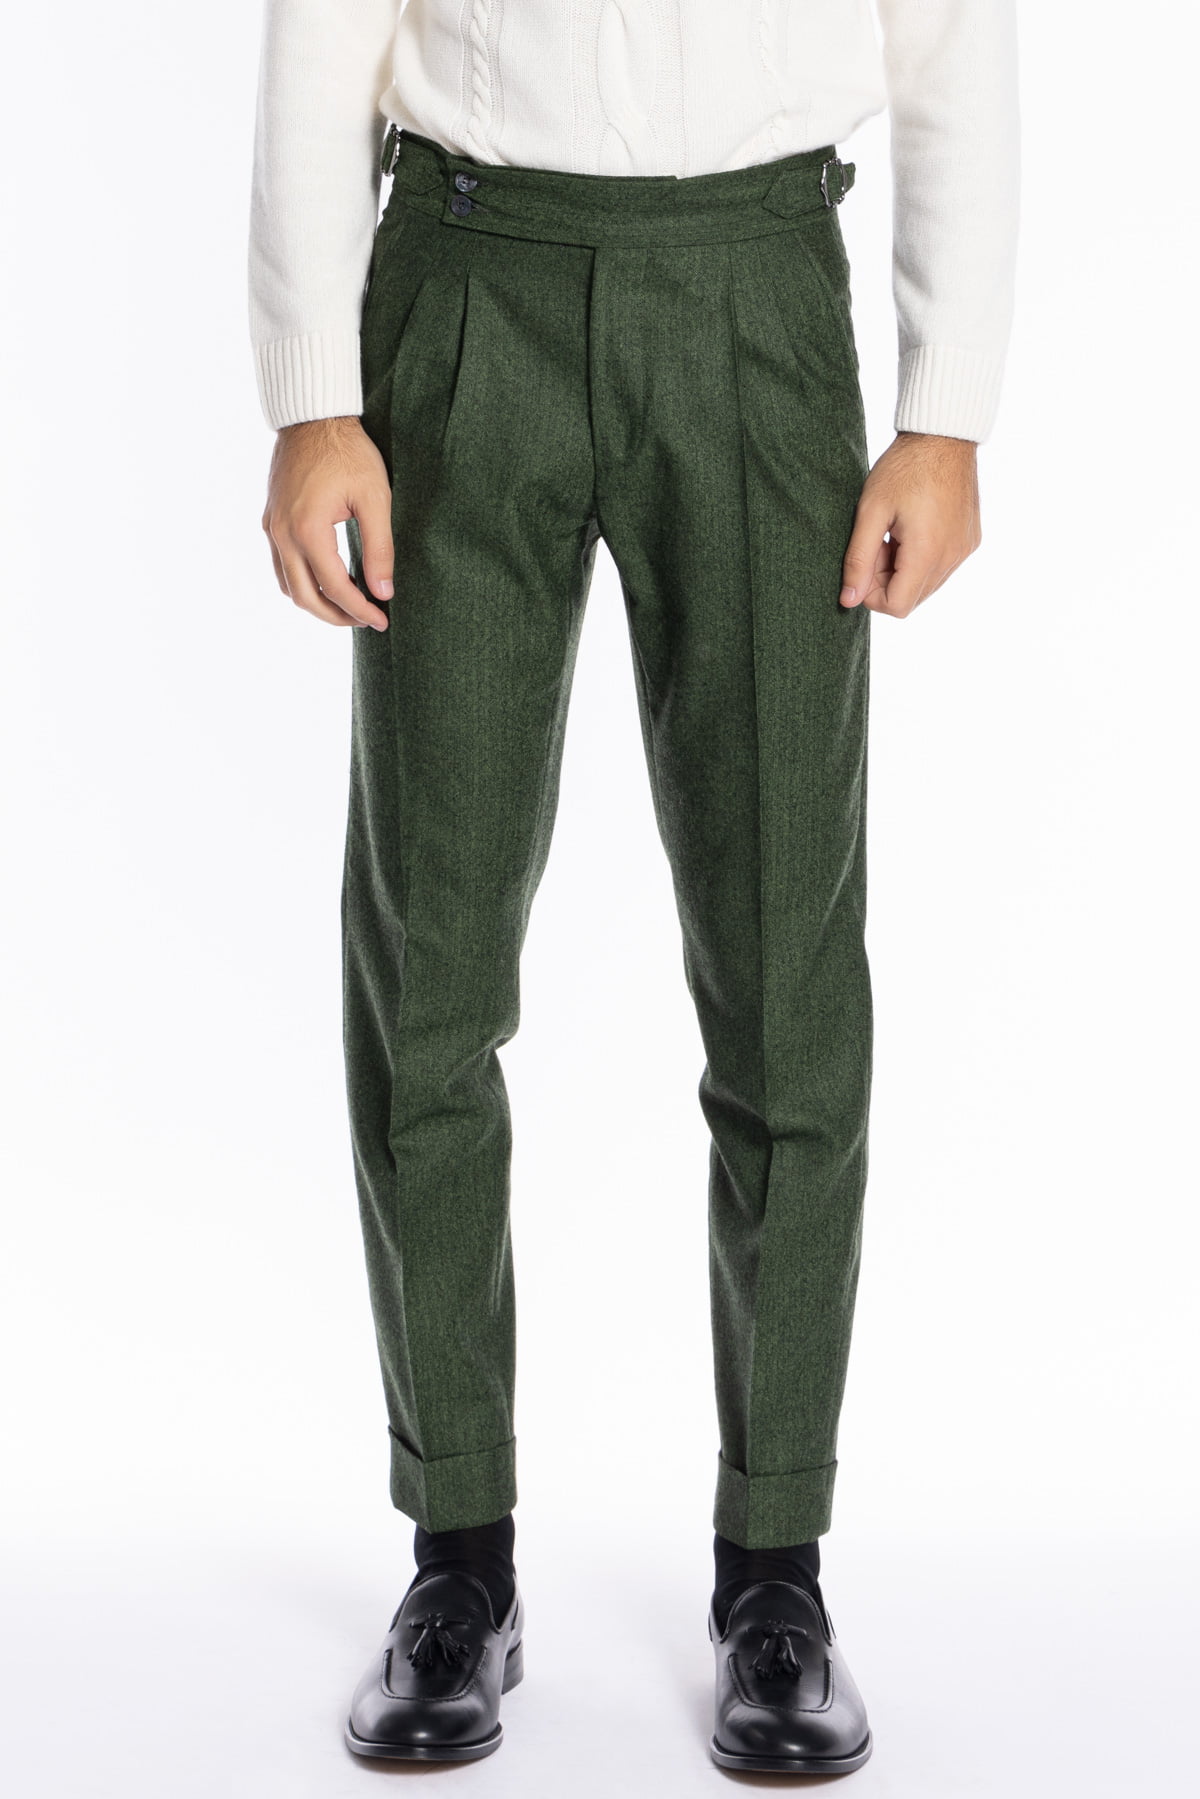 Pantalone uomo verde spigato vita alta tasca america in lana flanella Holland & Sherry con doppia pinces e fibbie laterali regolabili